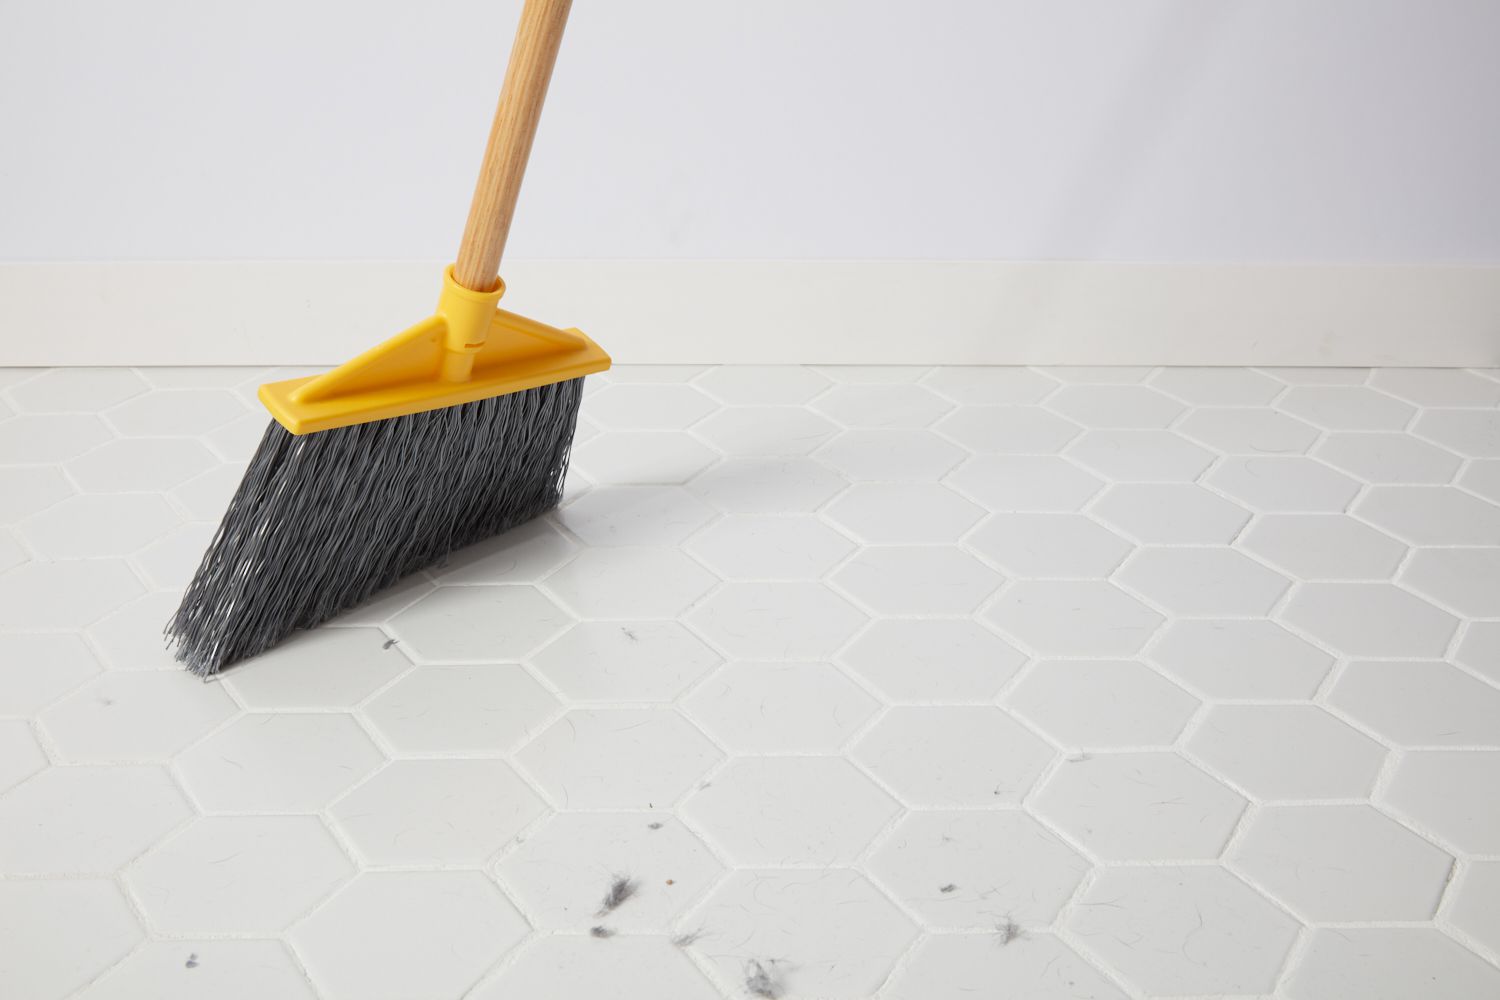 Sử dụng chổi hoặc máy hút bụi để làm sạch các loại bụi bẩn trên sàn.